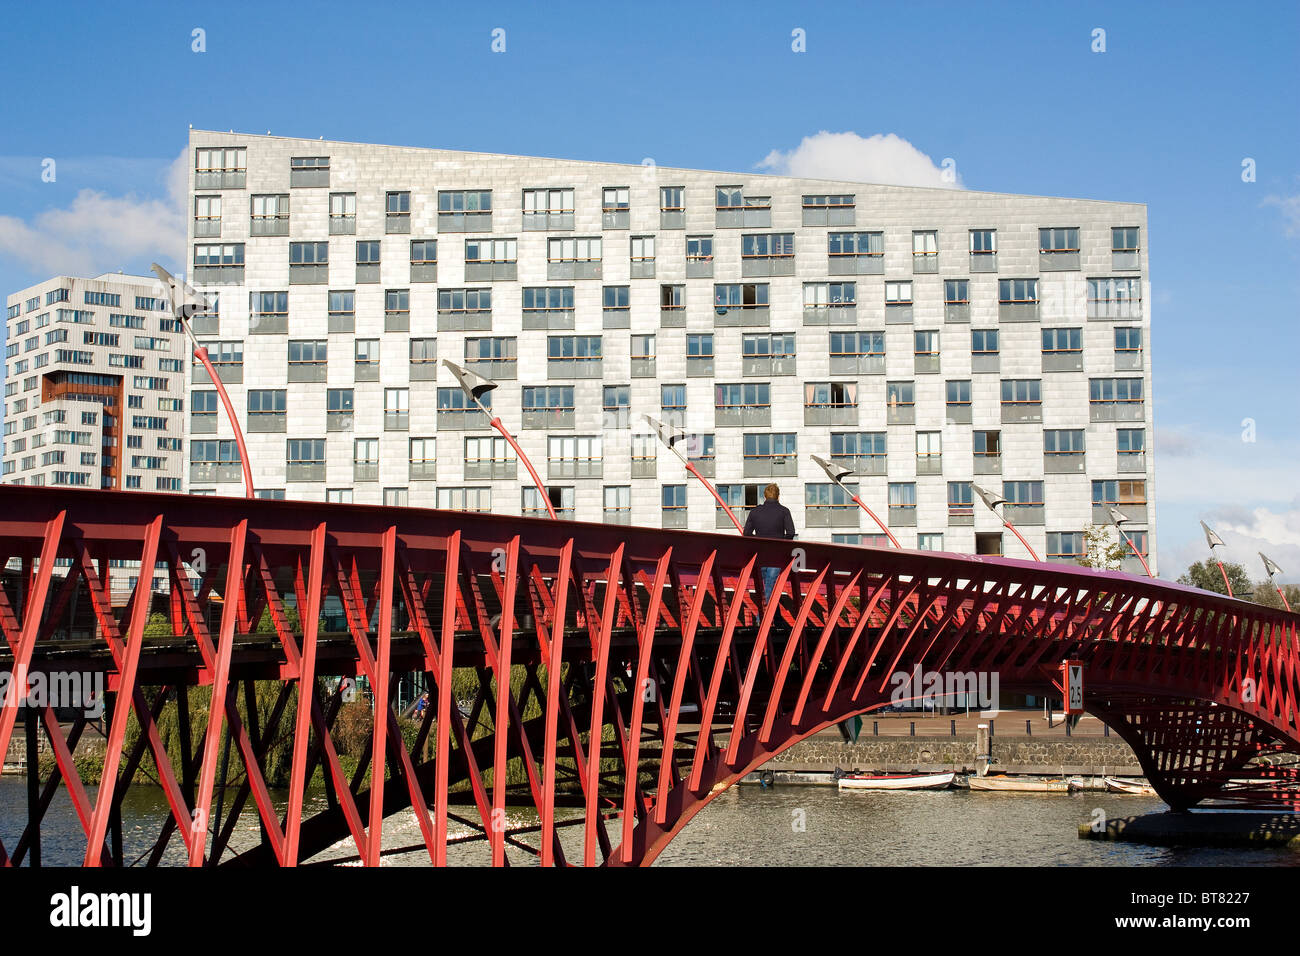 L'architecture moderne : pont en acier rouge à Amsterdam, Eastern Docklands Sfinx building en arrière-plan, par Frits van Dongen Banque D'Images